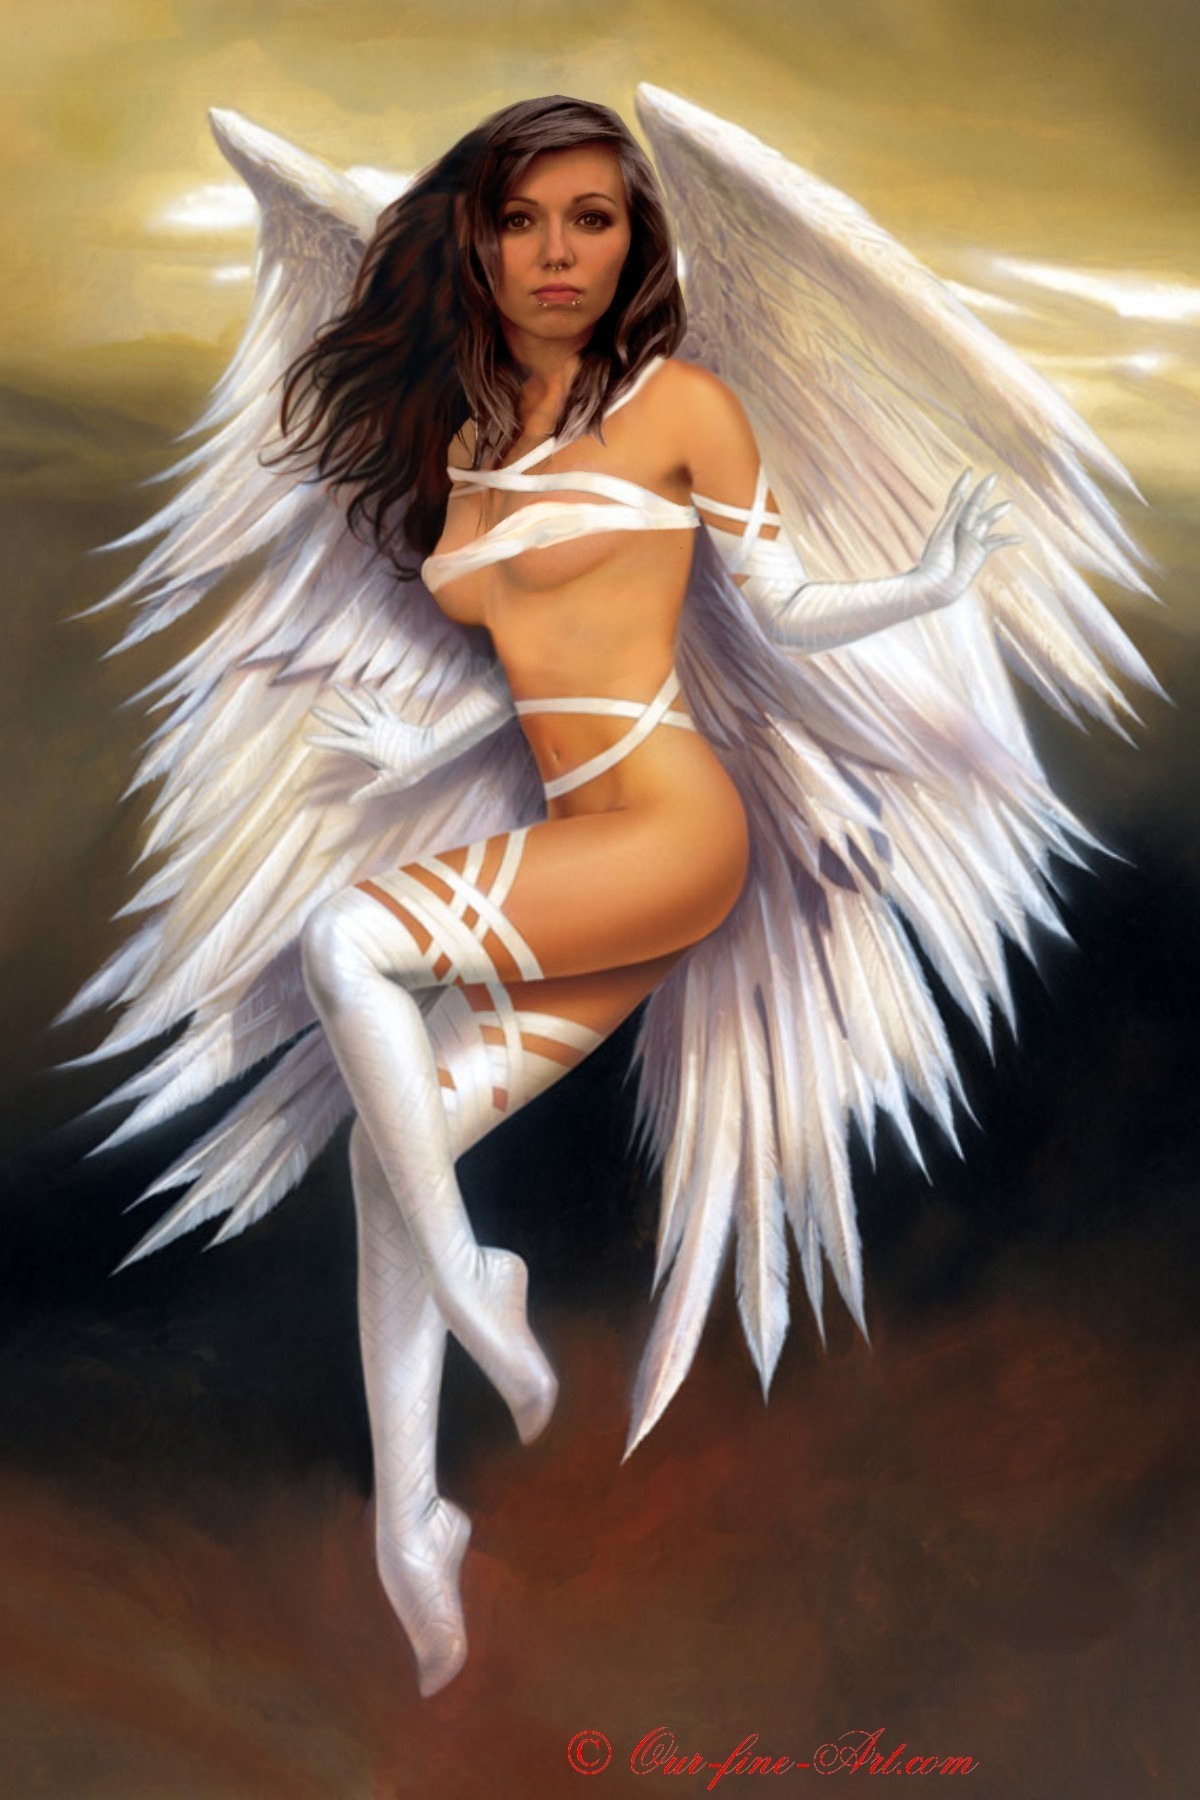 Фото голого ангела танцующего с крыльями » Порно фото и голые девушки в эротике